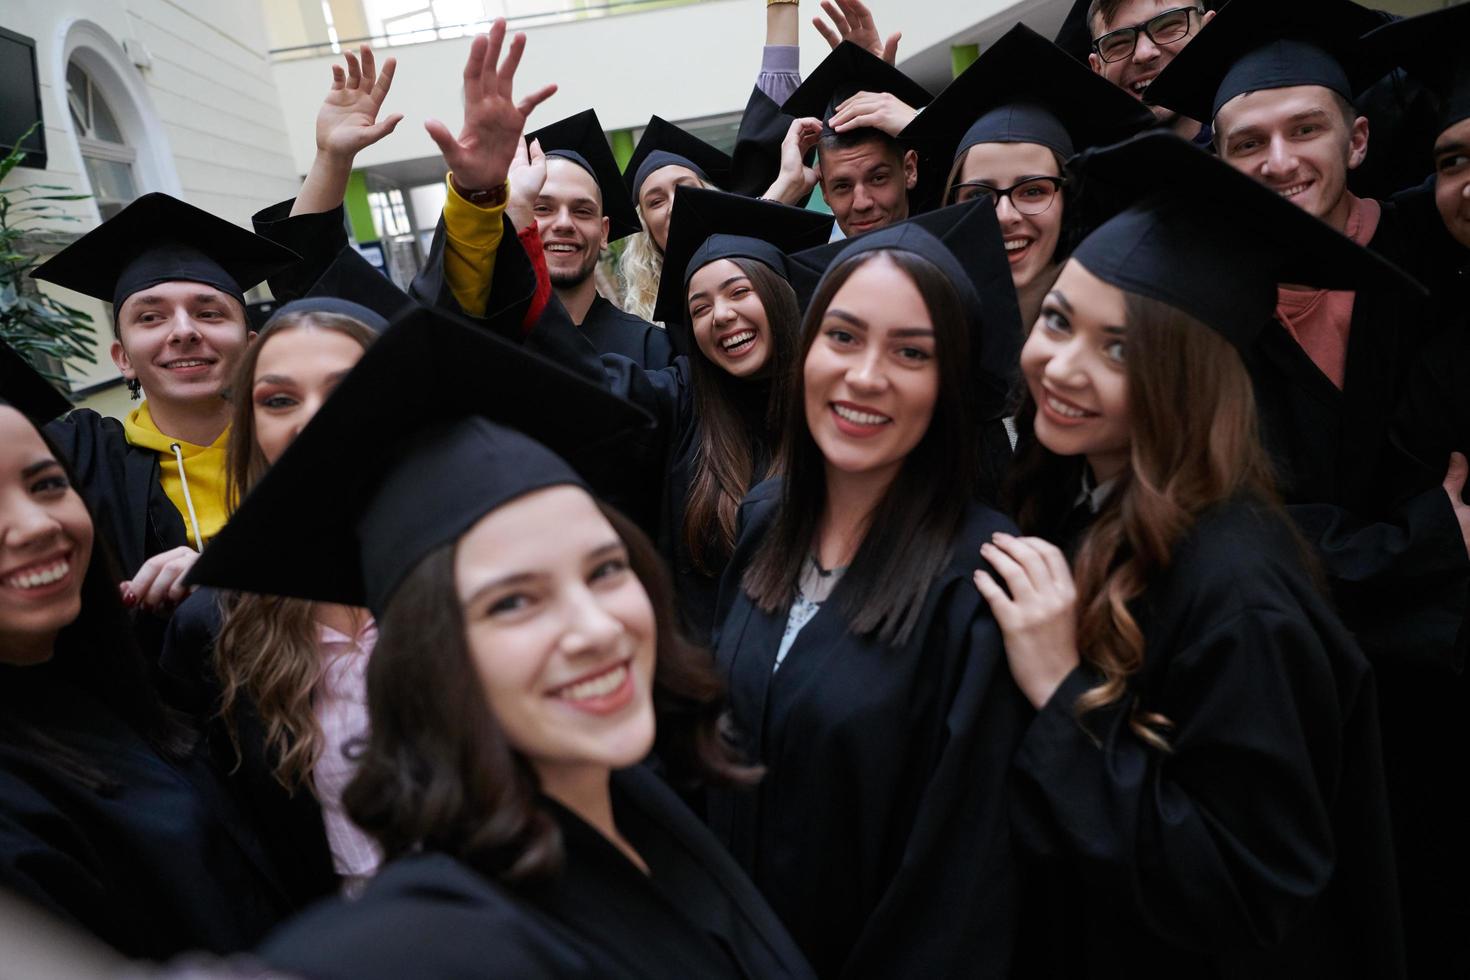 grupo de estudantes internacionais felizes em placas de argamassa e vestidos de solteiro com diplomas tomando selfie por smartphone foto